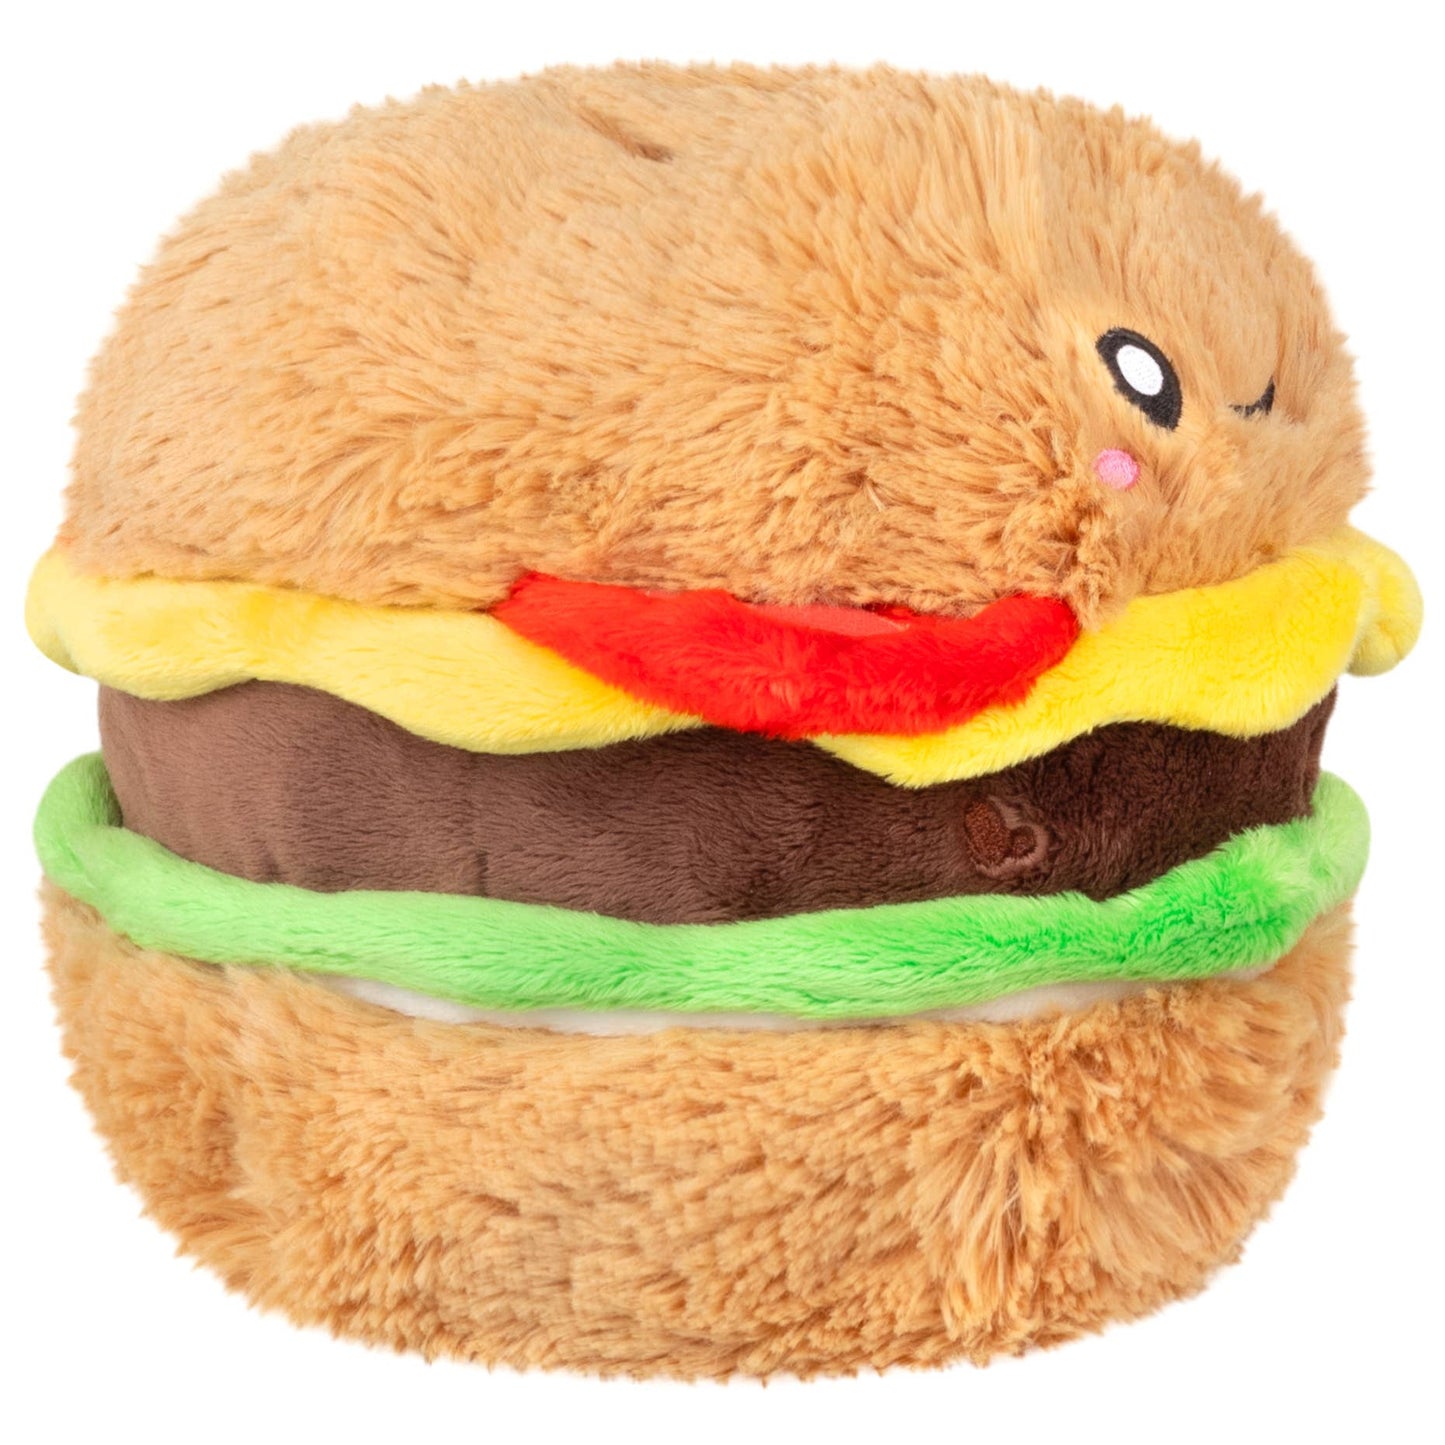 Mini Comfort Food Cheeseburger